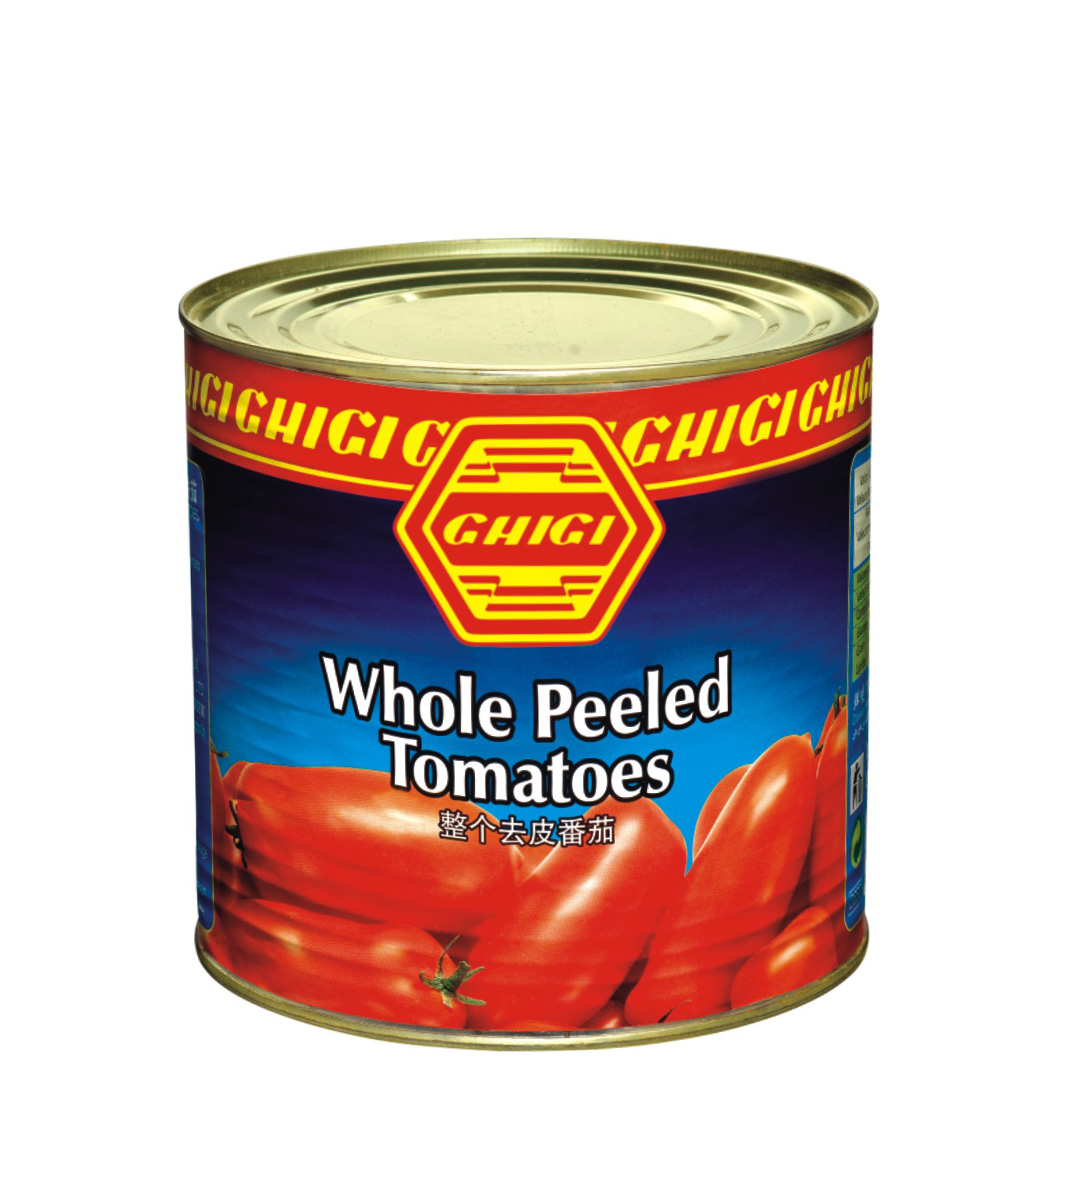 GHIGI Whole Peeled Tomatoes